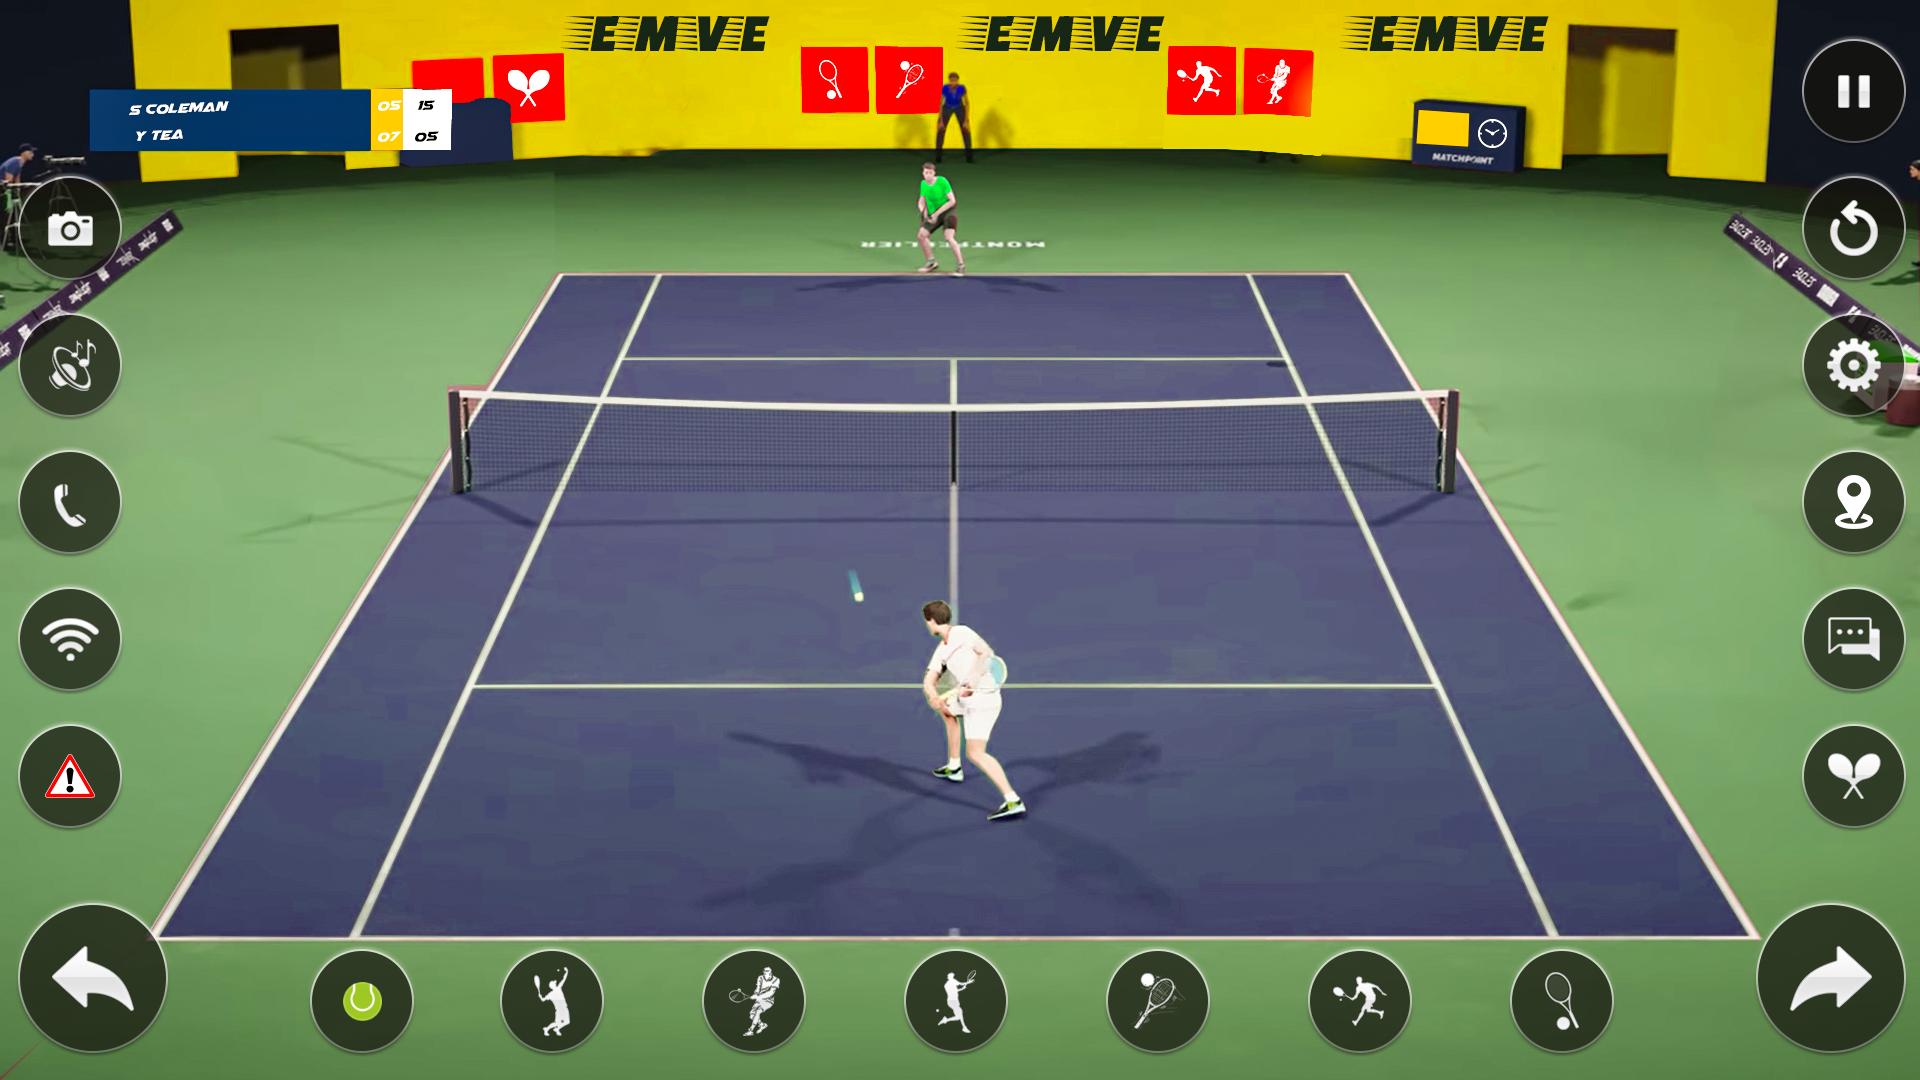 Теннис игра 3. Tennis for two игра. 3d теннис. Хумо Арена теннис. Парная игра в теннис когда противником является стенка.